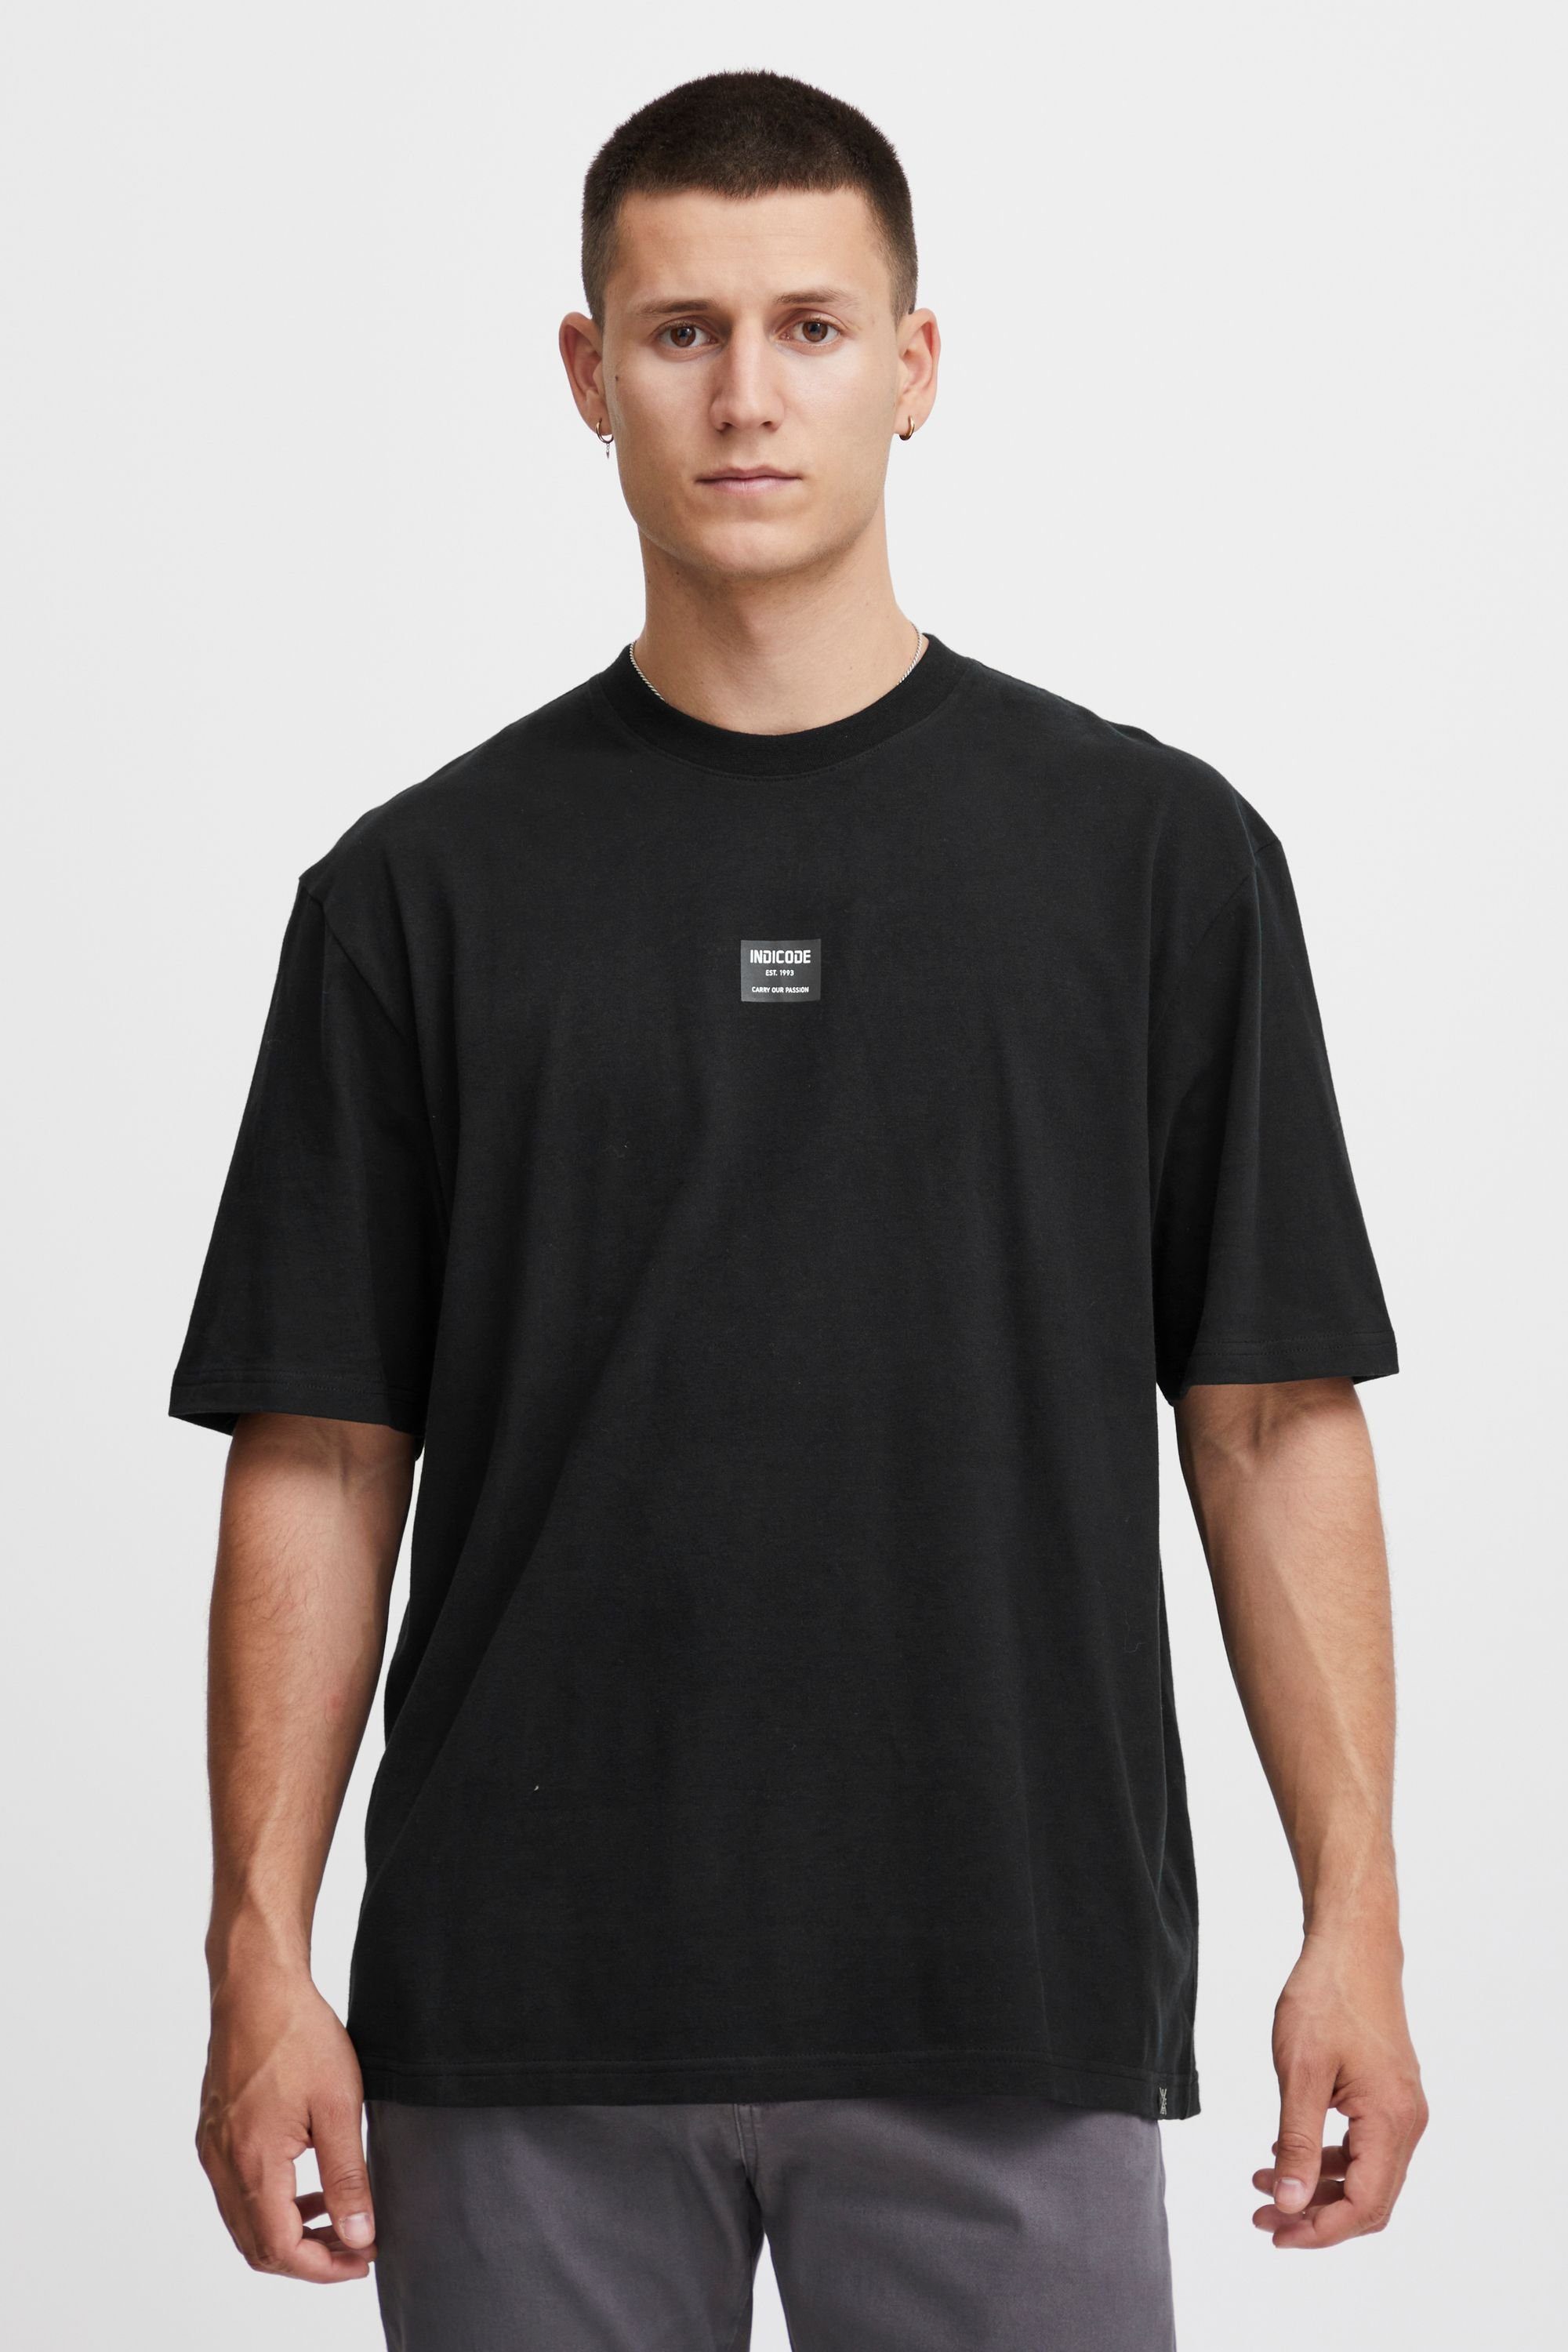 T-Shirt Indicode Black (999)